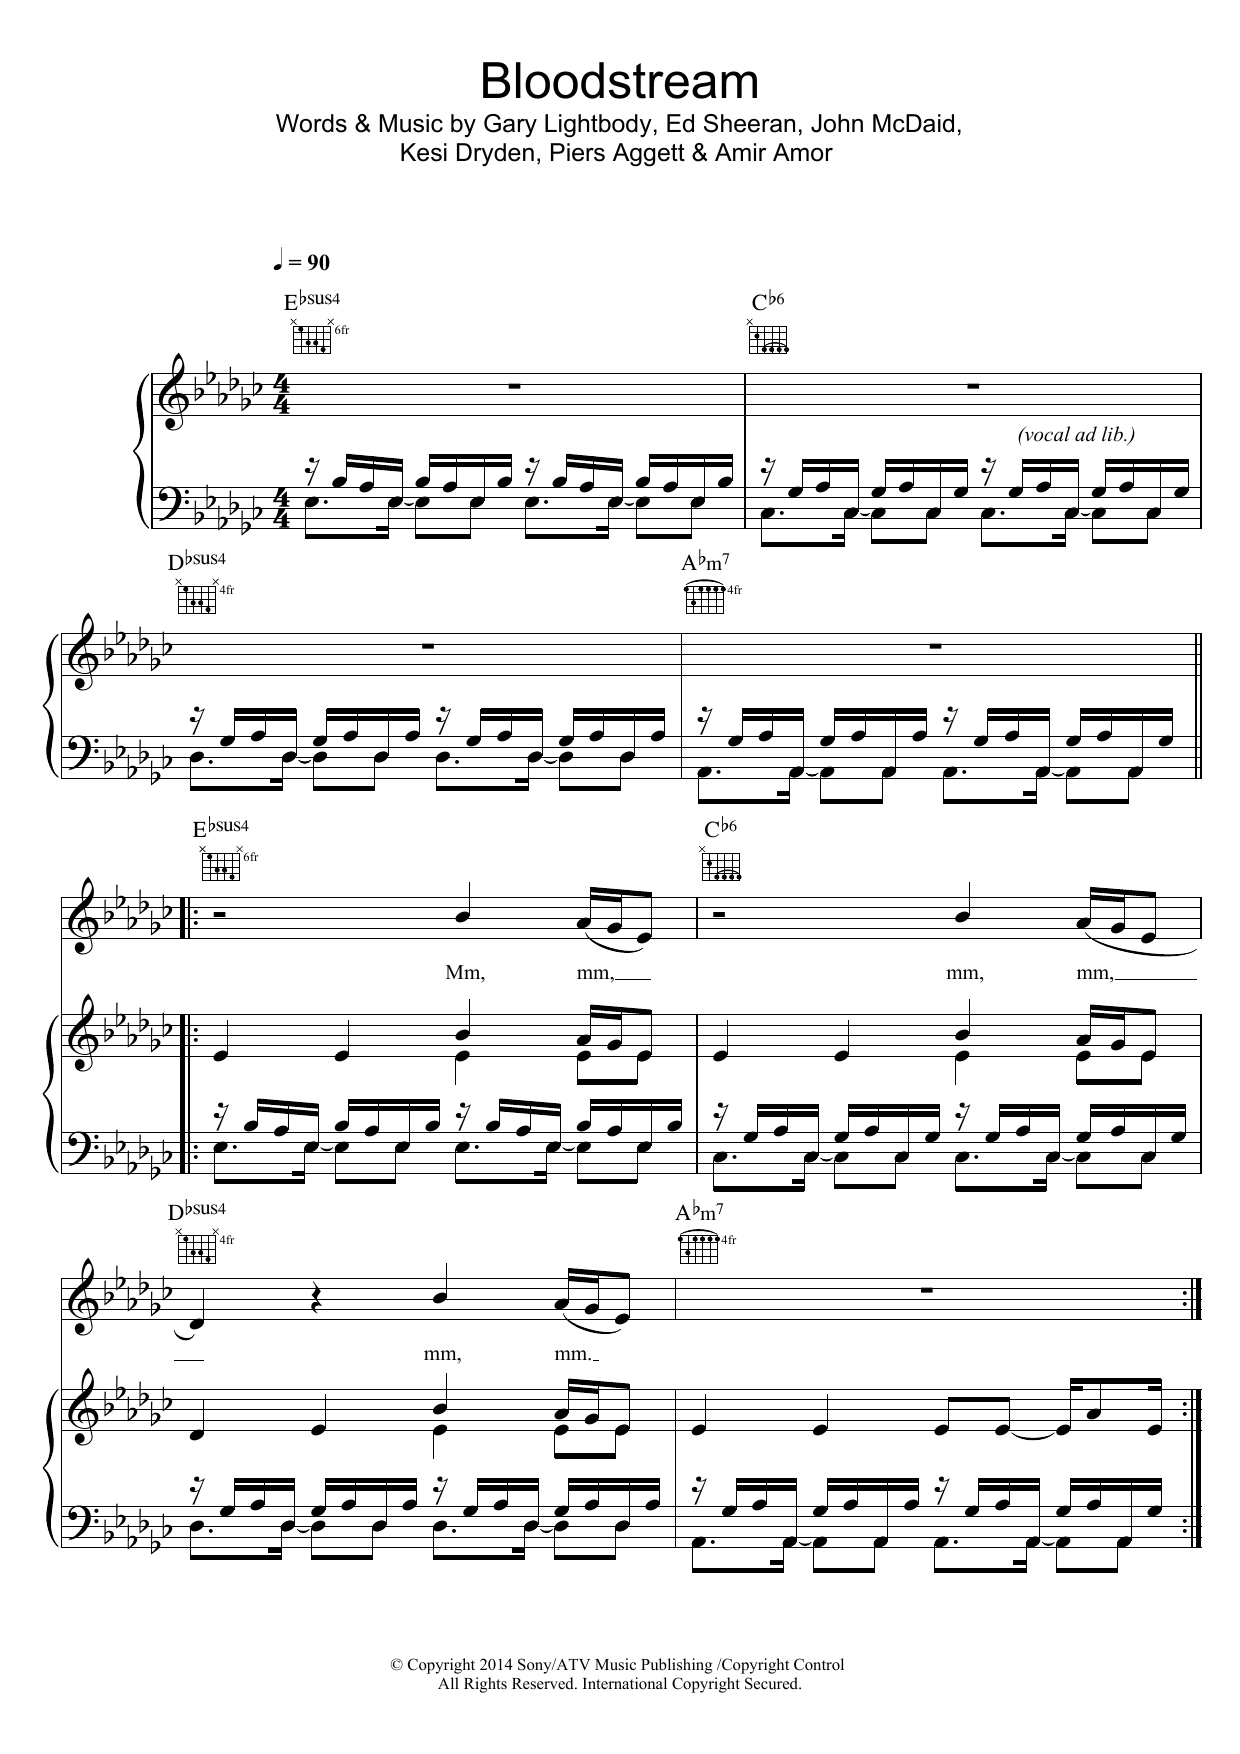 Ed Sheeran Bloodstream Sheet Music Notes & Chords for Lyrics & Chords - Download or Print PDF